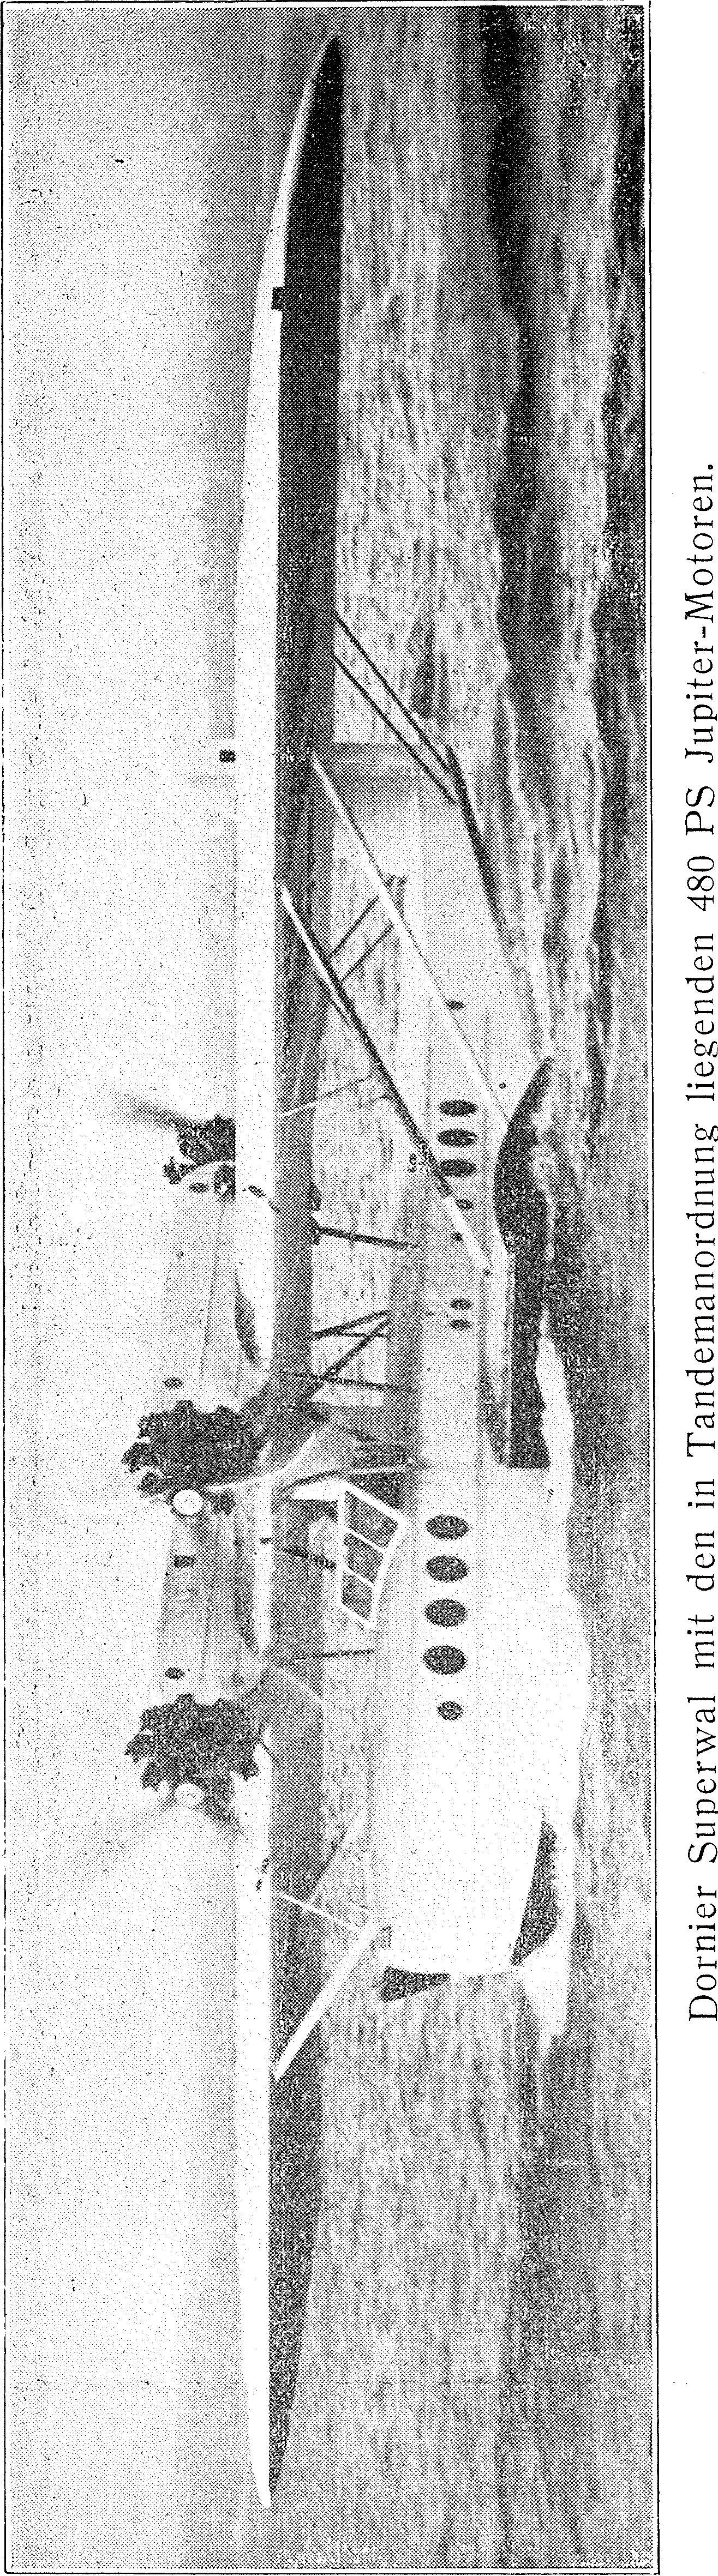 Segelflug, Motorflug und Modellflug sowie Luftfahrt und Luftverkehr im Deutschen Reich (Weimarer Republik) im Jahre 1928